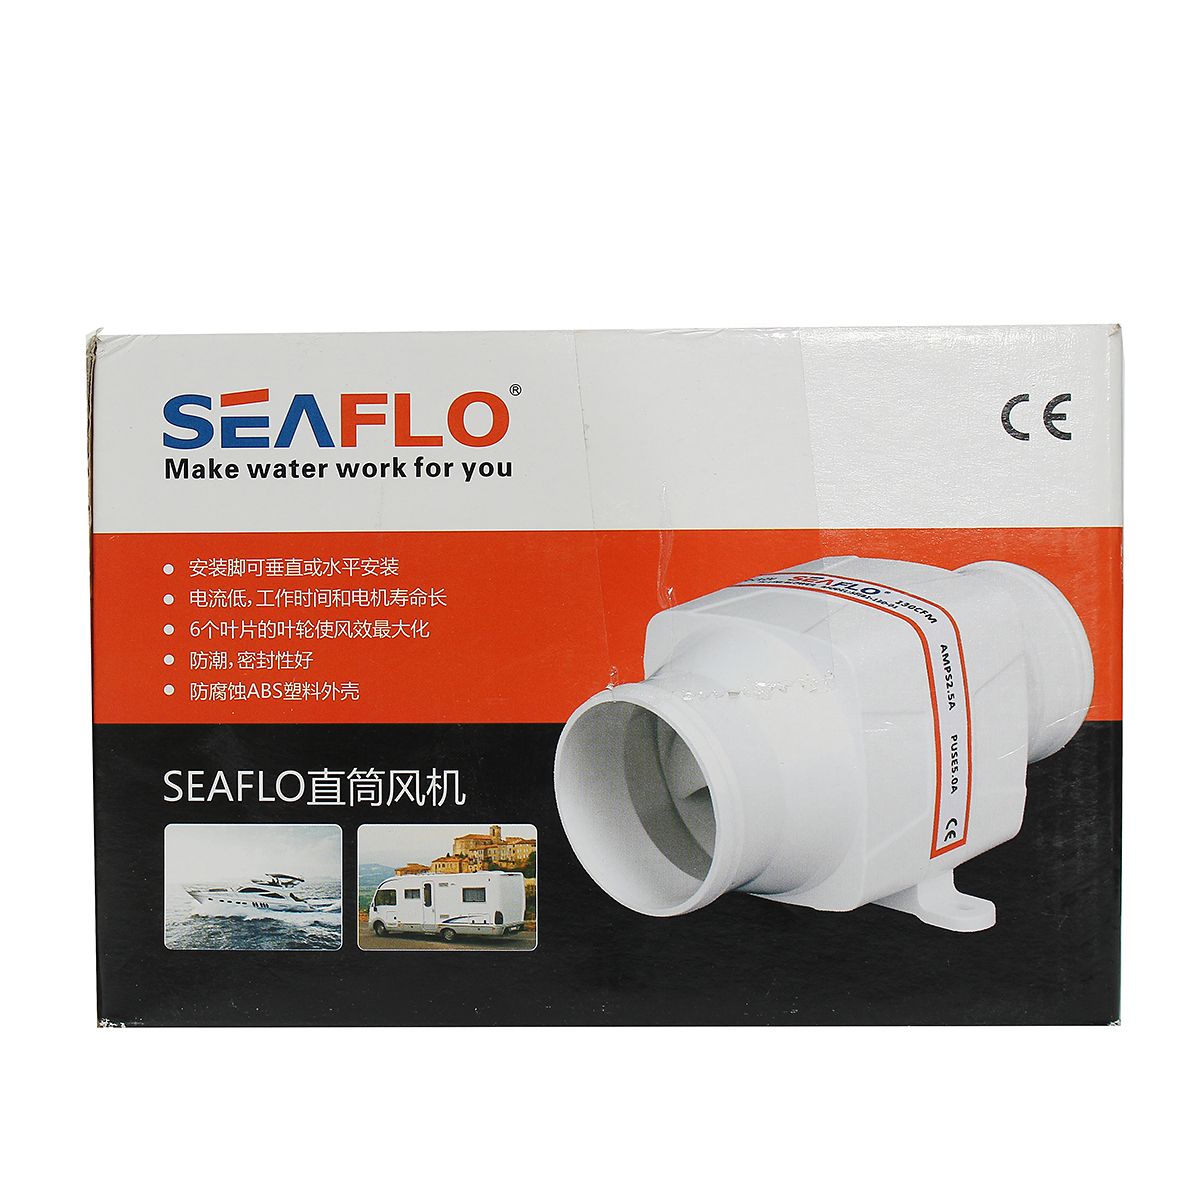 Seaflo-4-Inch-270CFM-In-Line-Air-Blower-Ventilation-Fan-Ventilator-for-DC-12V-Marine-Boat-Bilge-Kitc-1185167